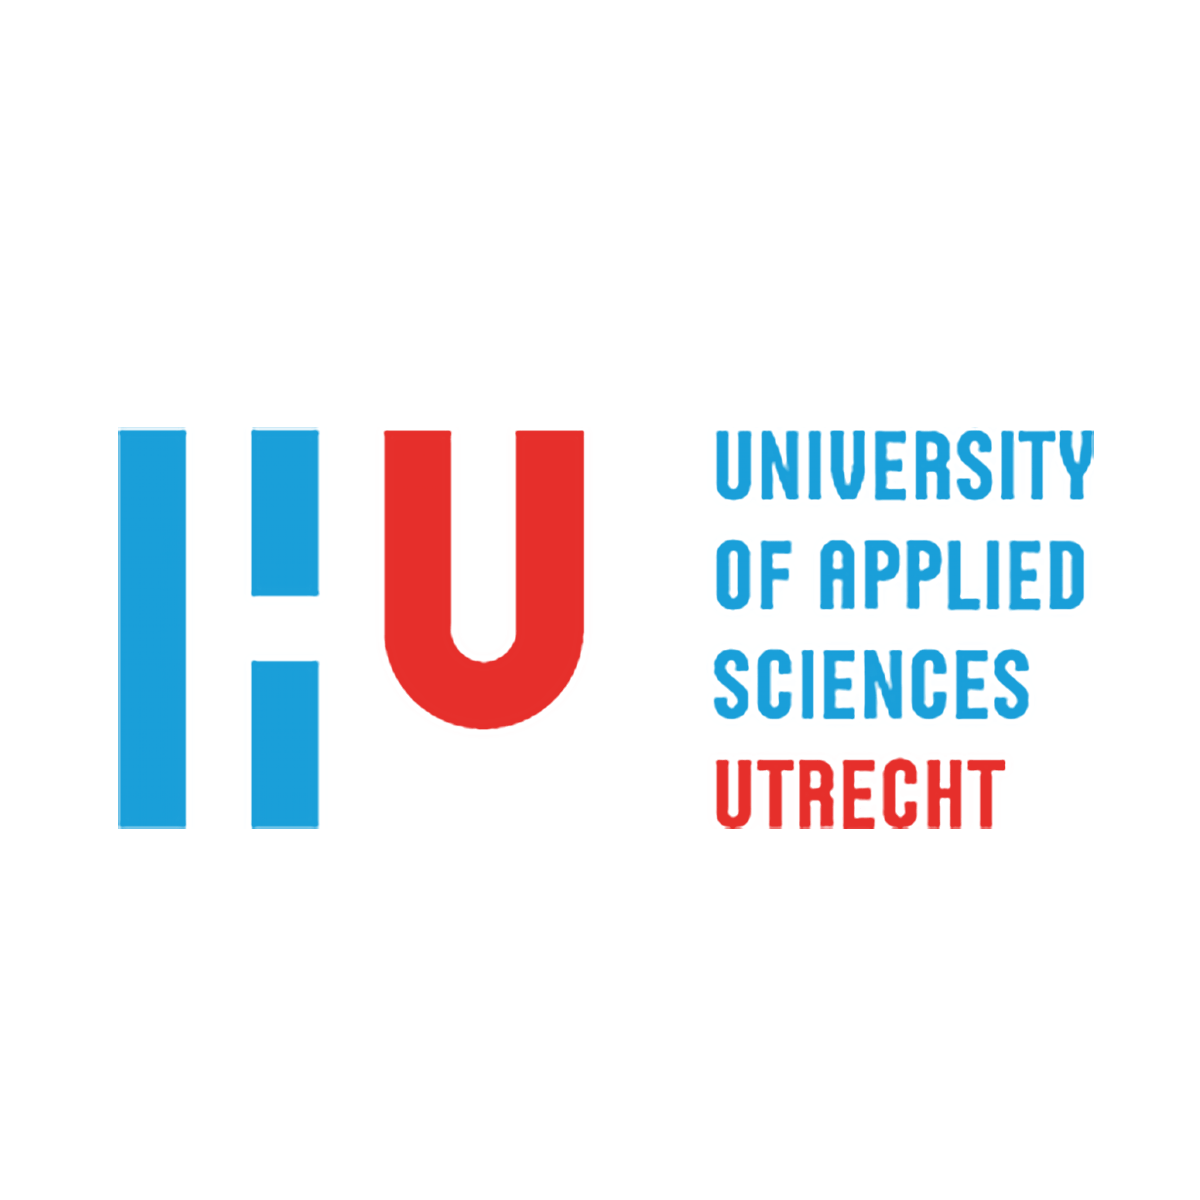 University of Applied Sciences, Utrecht